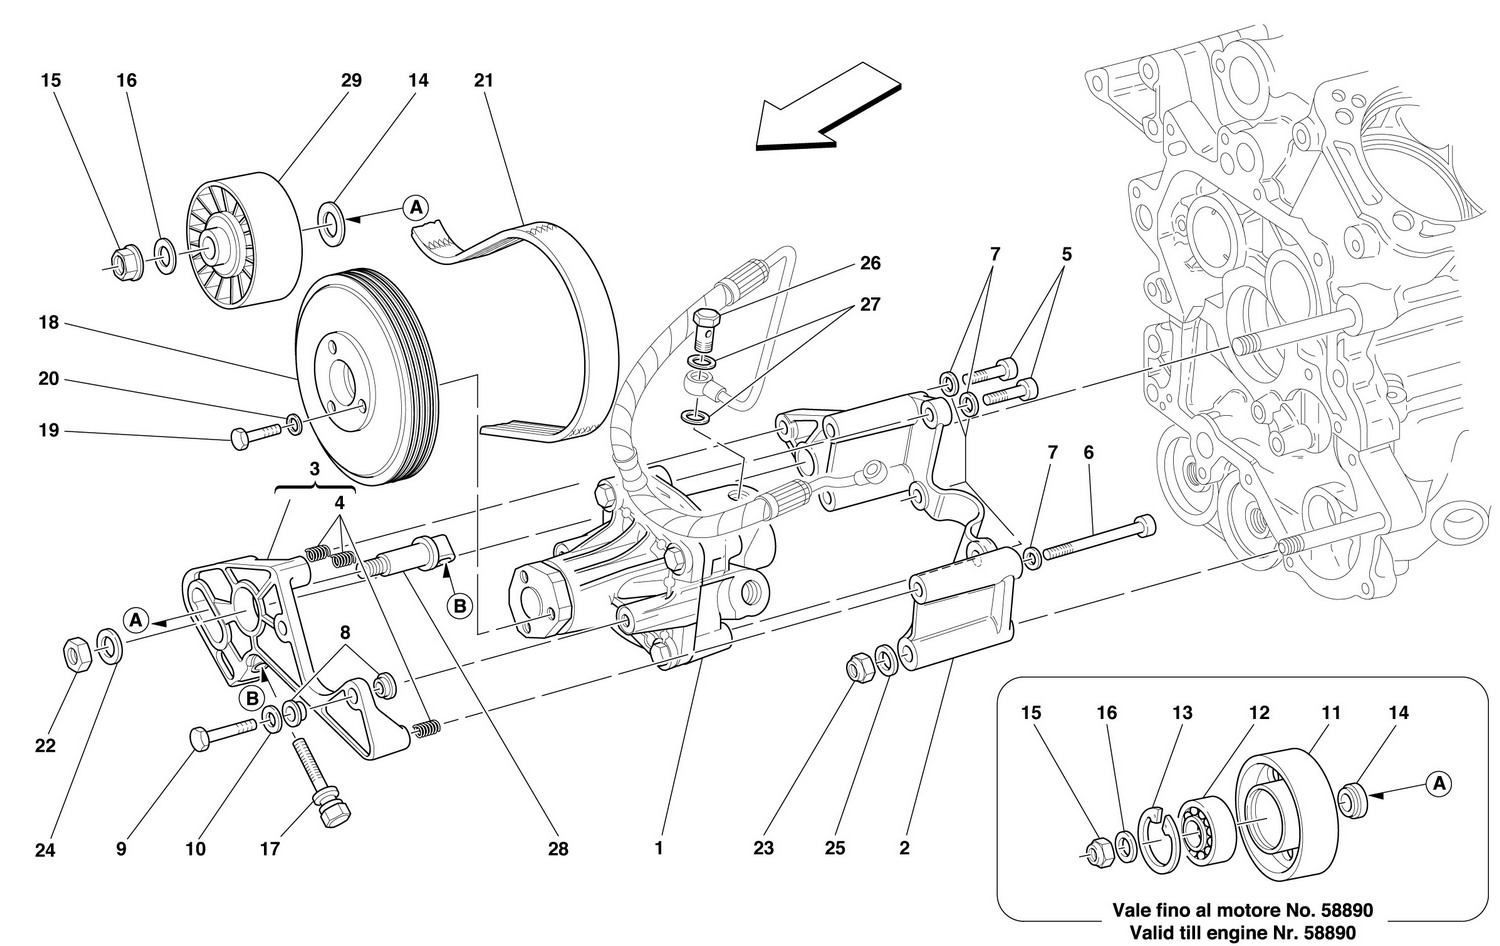 Schematic: Hydraulic Steering Pumps